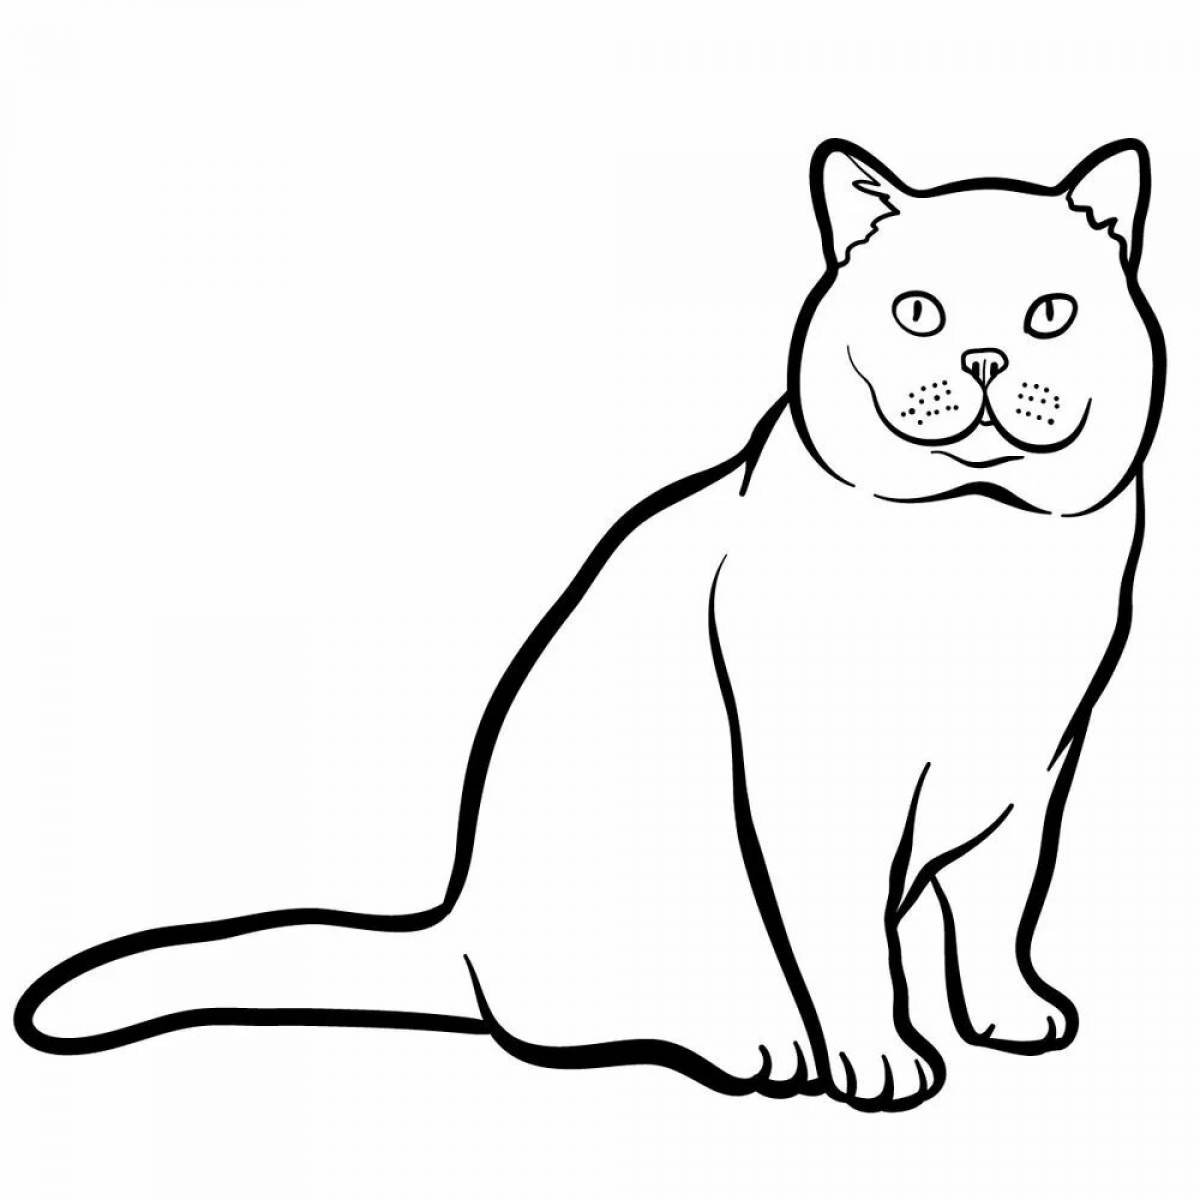 Раскраска Английская короткошерстная | Раскраски кошек. Рисунки кош�ек, картинки кошек